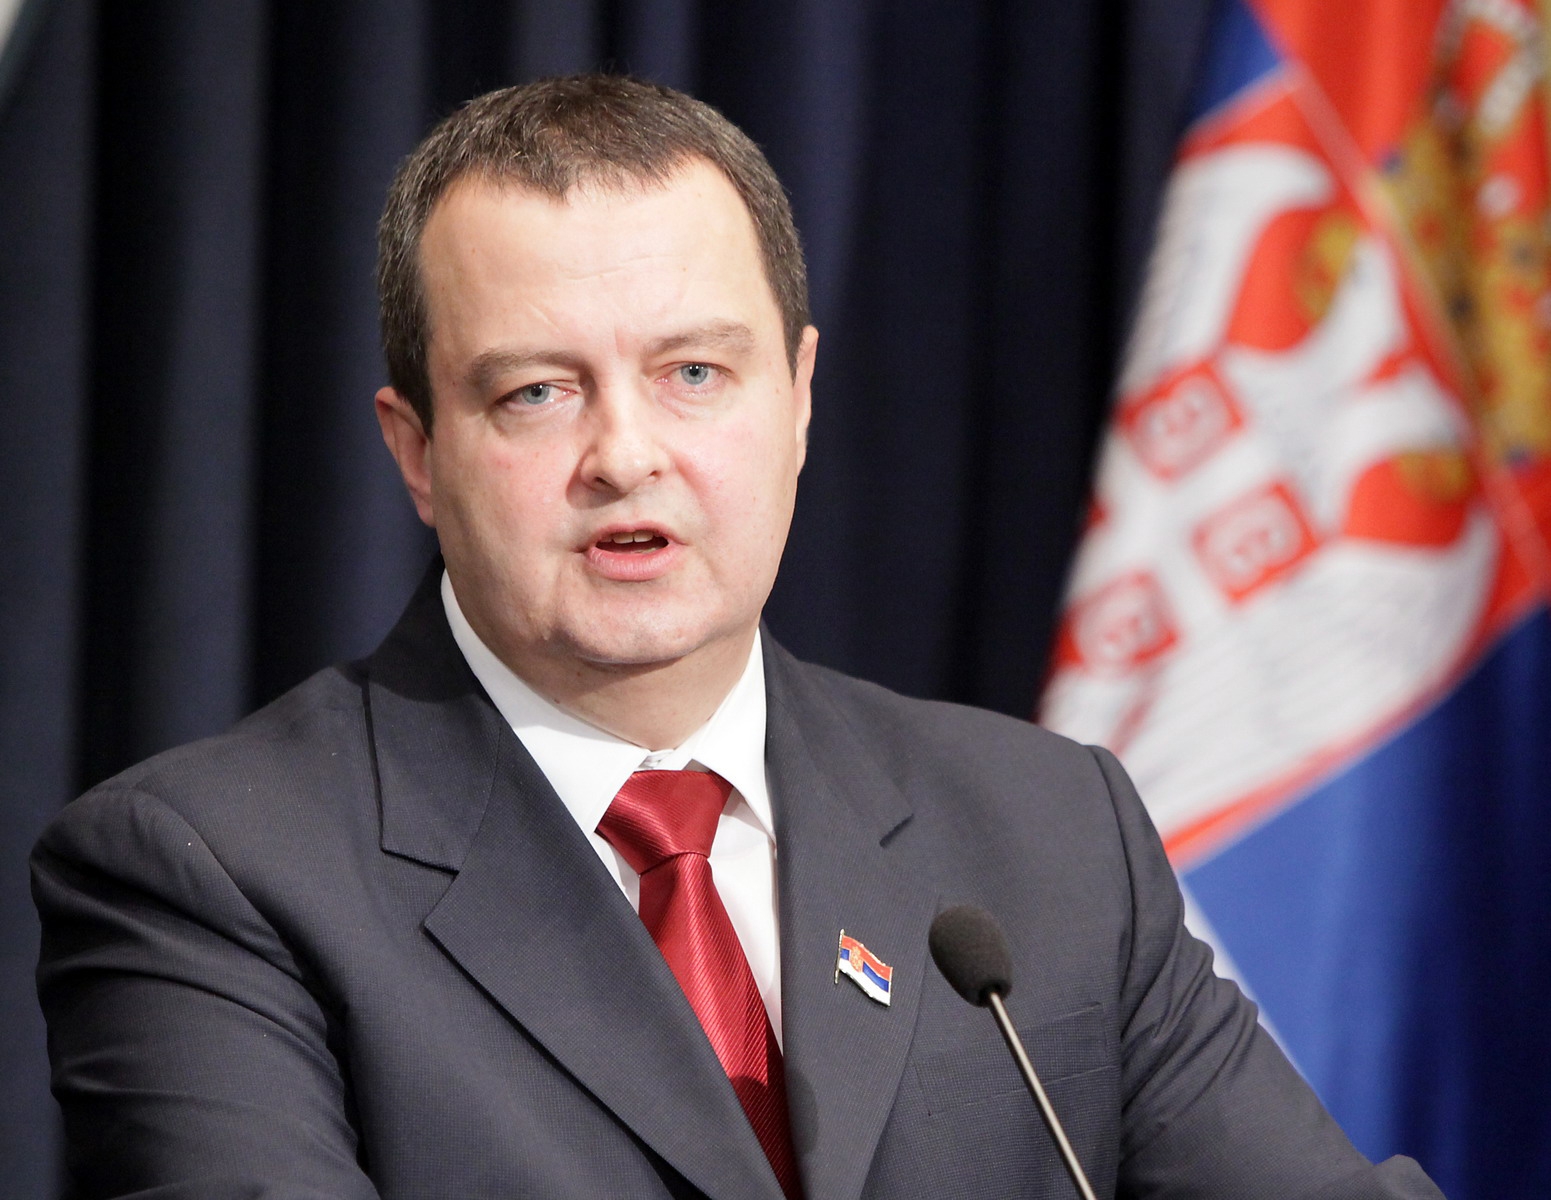 Αιφνίδια κρίση στις σχέσεις Σερβίας-Σκοπίων χθες την νύχτα – Εν αναμονή ανακοινώσεων Ί. Ντατσιτς